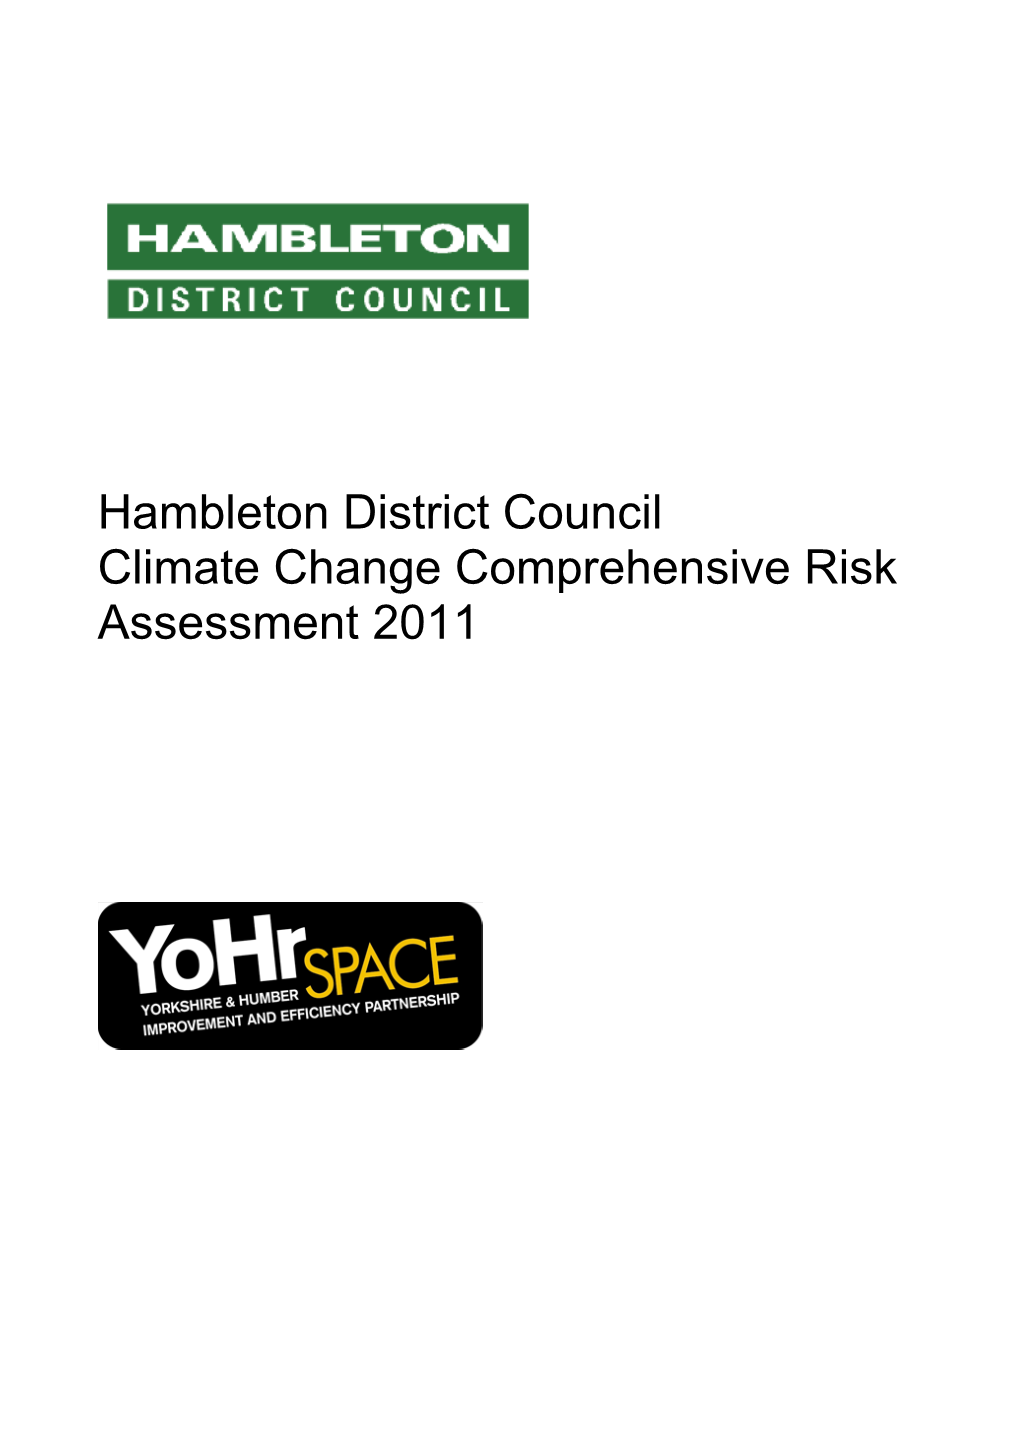 Hambleton District Council Climate Change Comprehensive Risk Assessment 2011